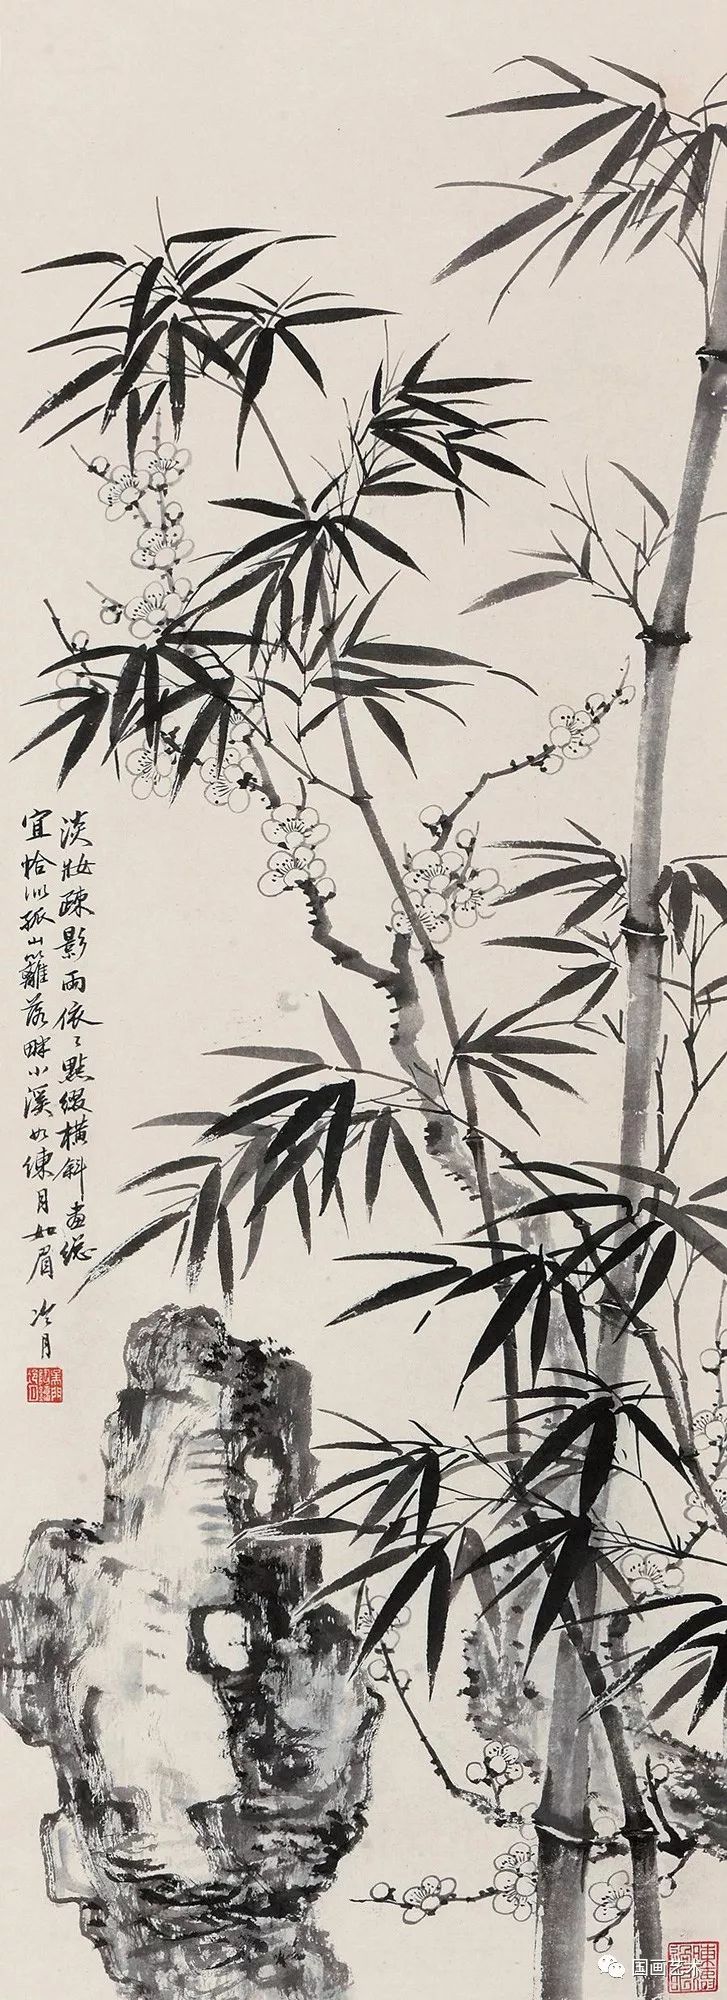 岁寒三友是指哪三个植物（指松、竹、梅三种植物）-第51张图片